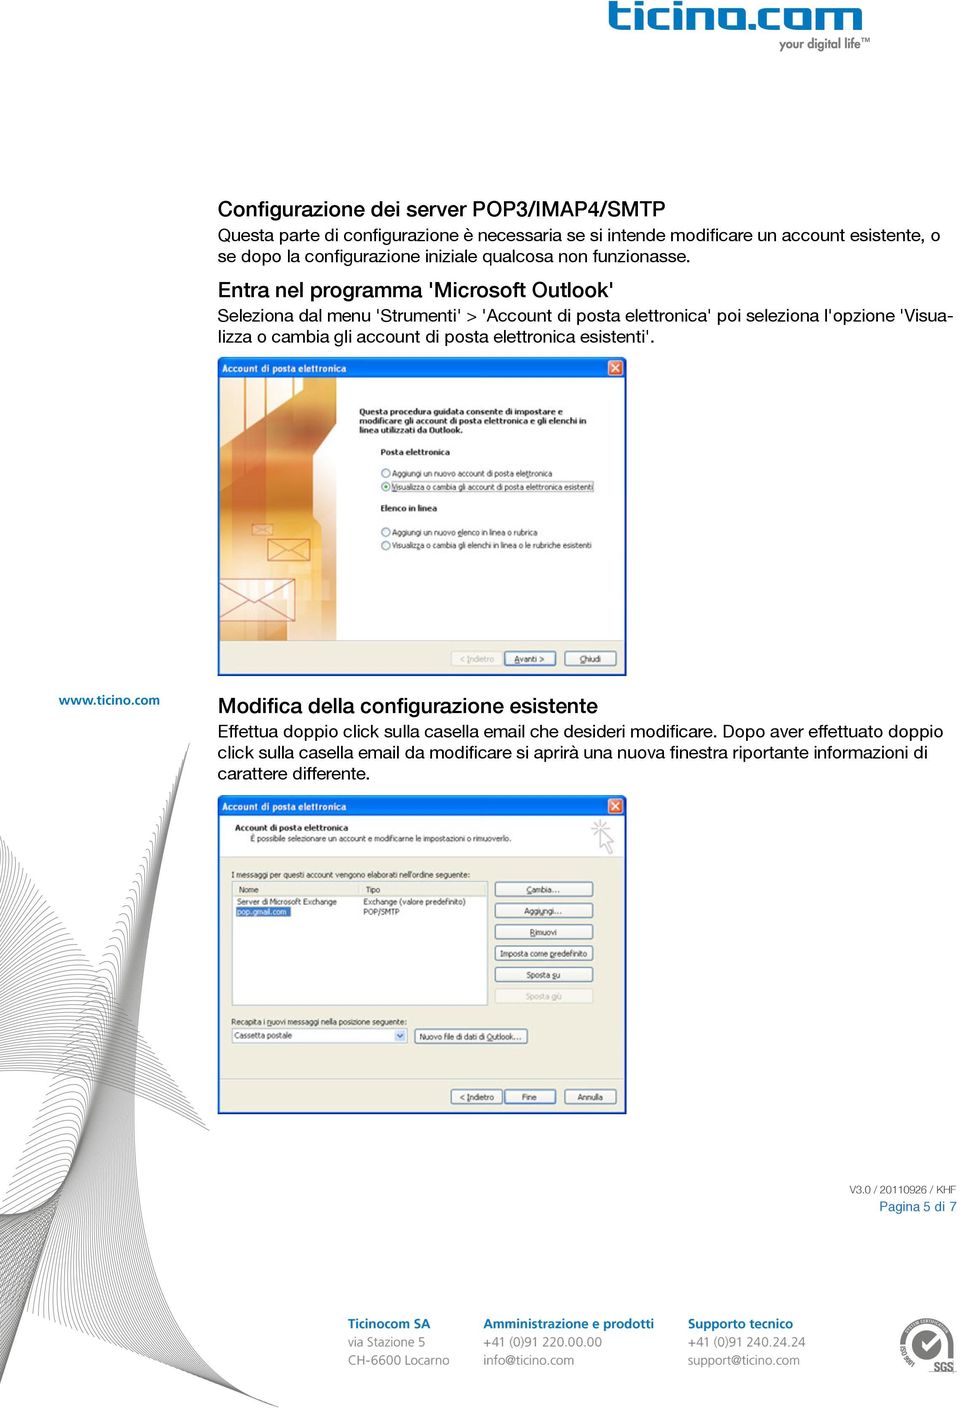 Entra nel programma 'Microsoft Outlook' Seleziona dal menu 'Strumenti' > 'Account di posta elettronica' poi seleziona l'opzione 'Visualizza o cambia gli account di